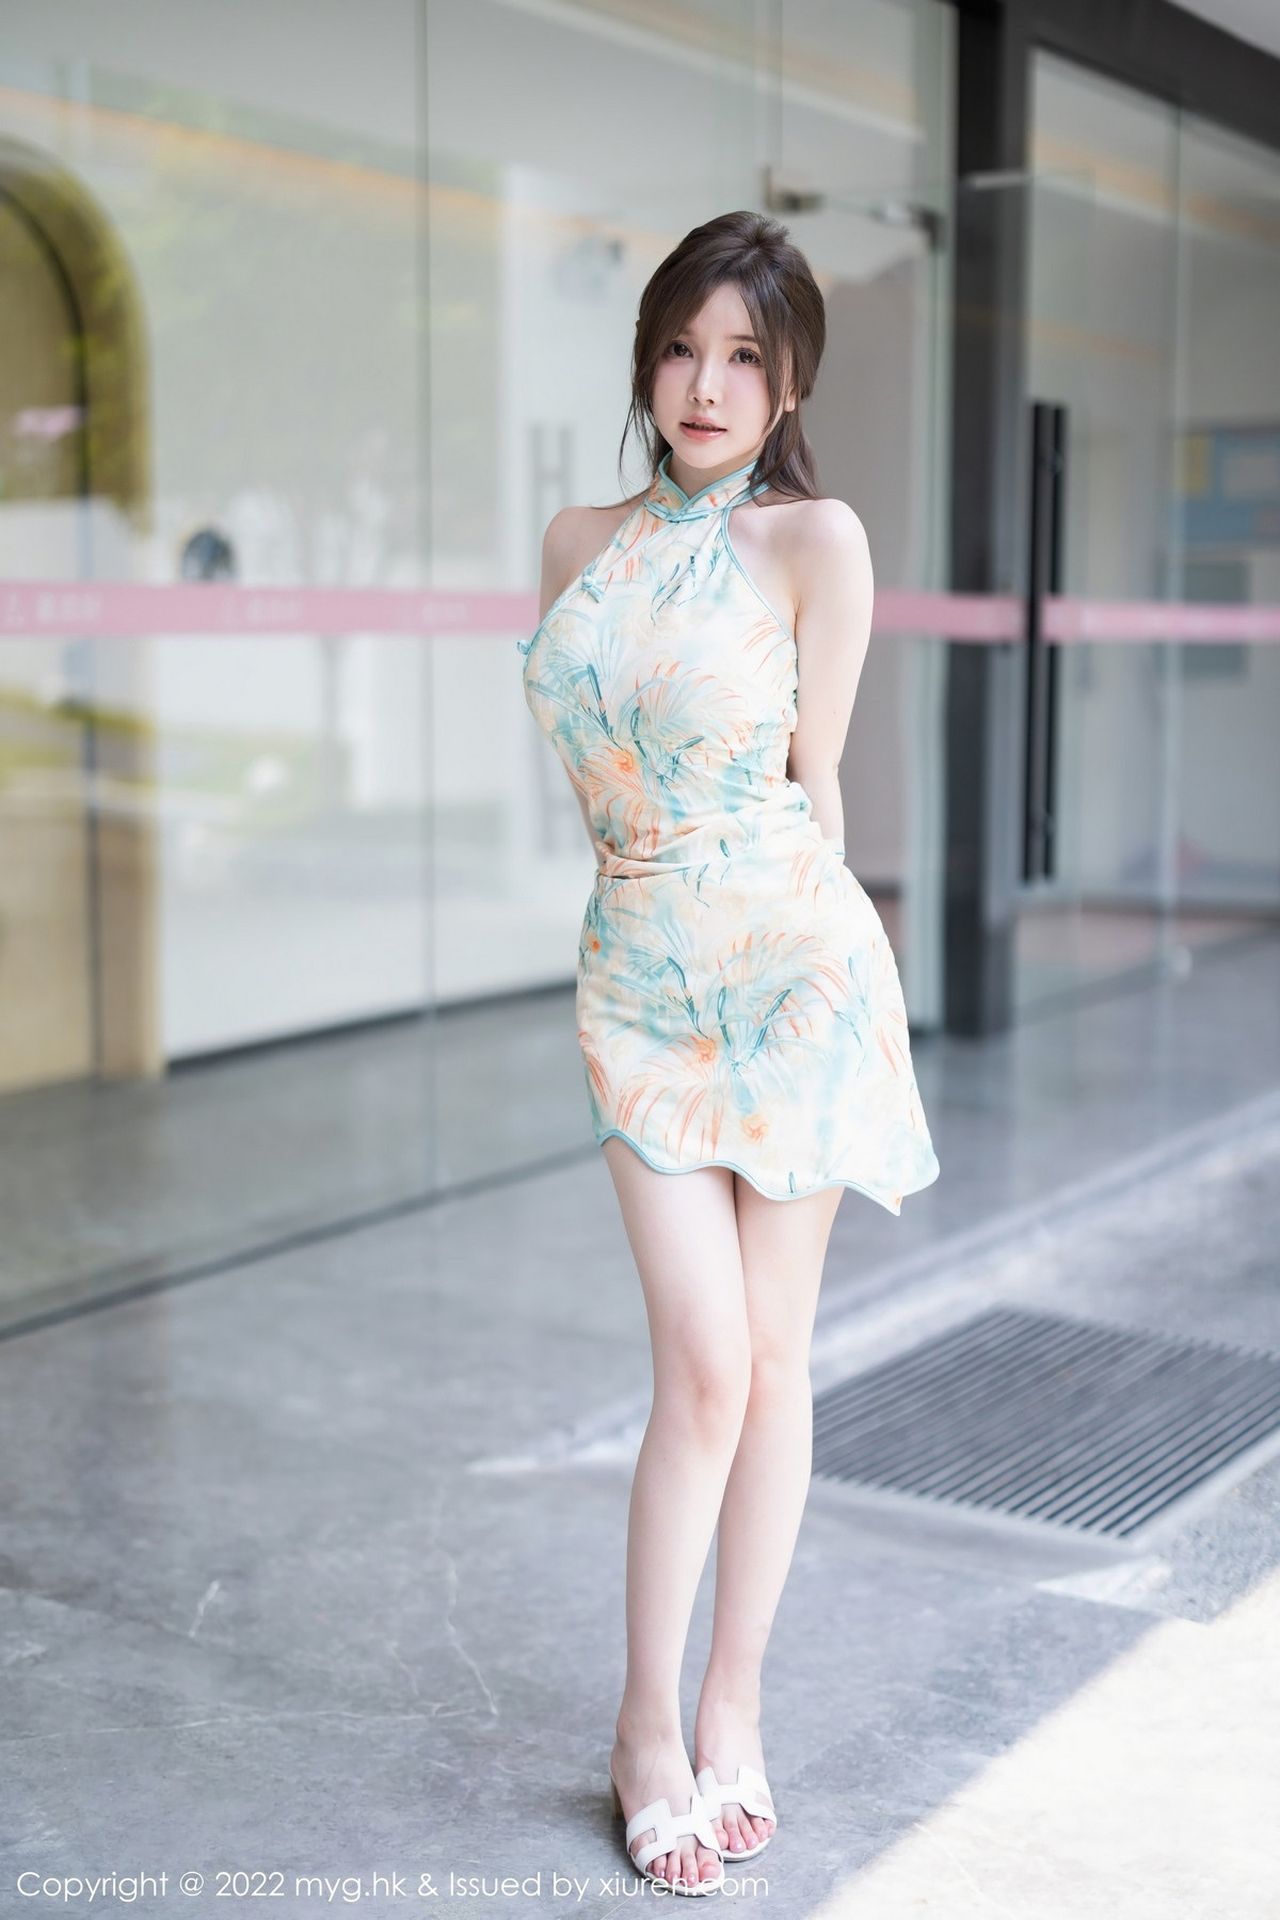 快！跟着美女模特游桂林-桂林生活网新闻中心